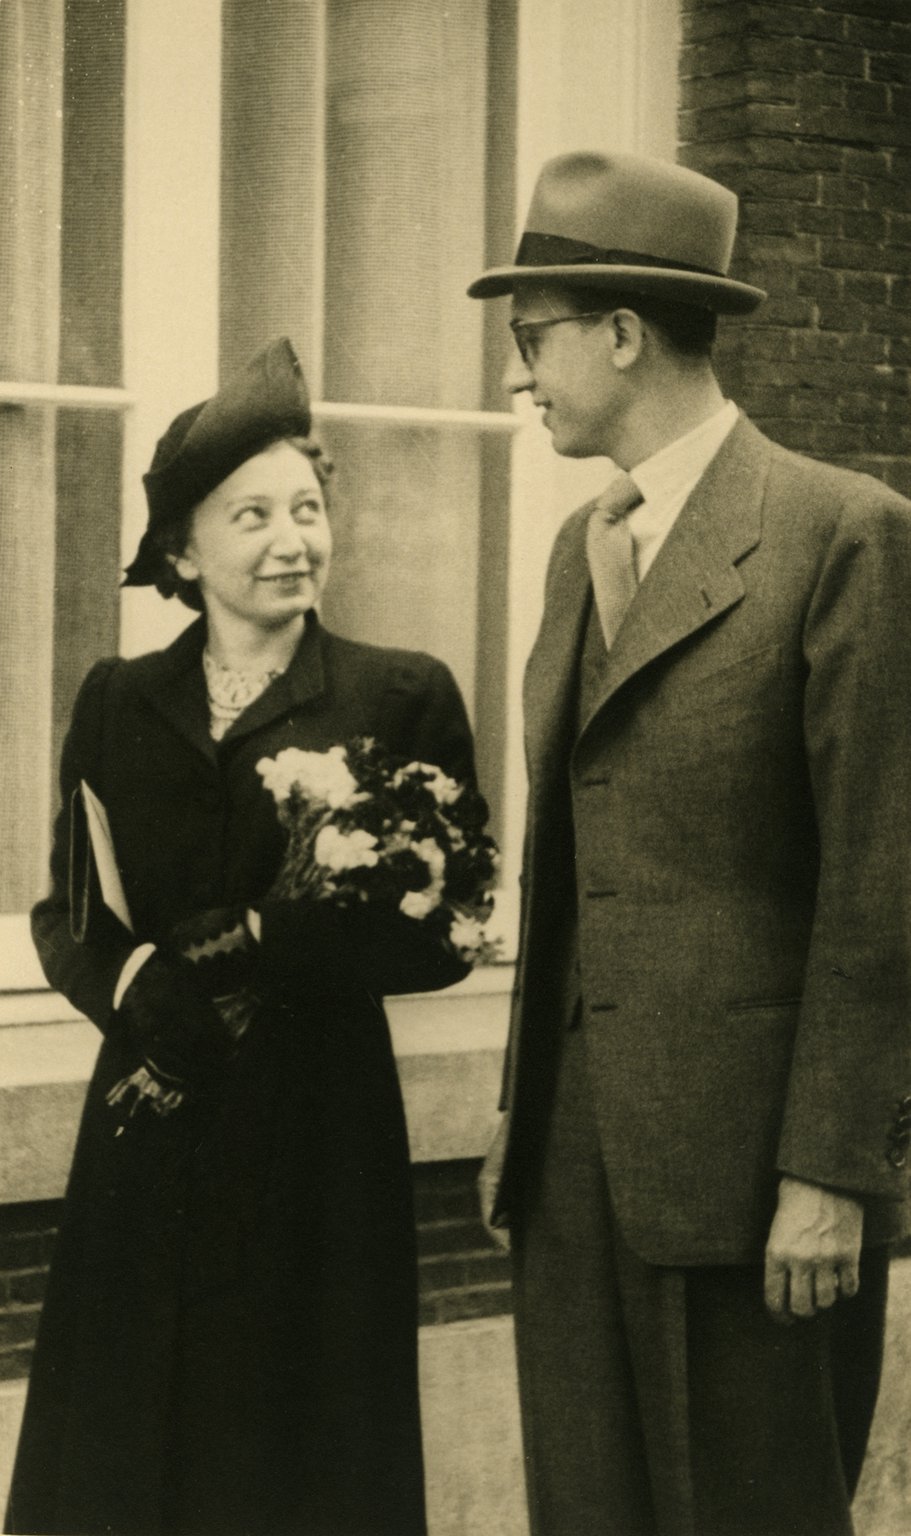 Het huwelijk van Miep en Jan Gies, 16 juli 1941.